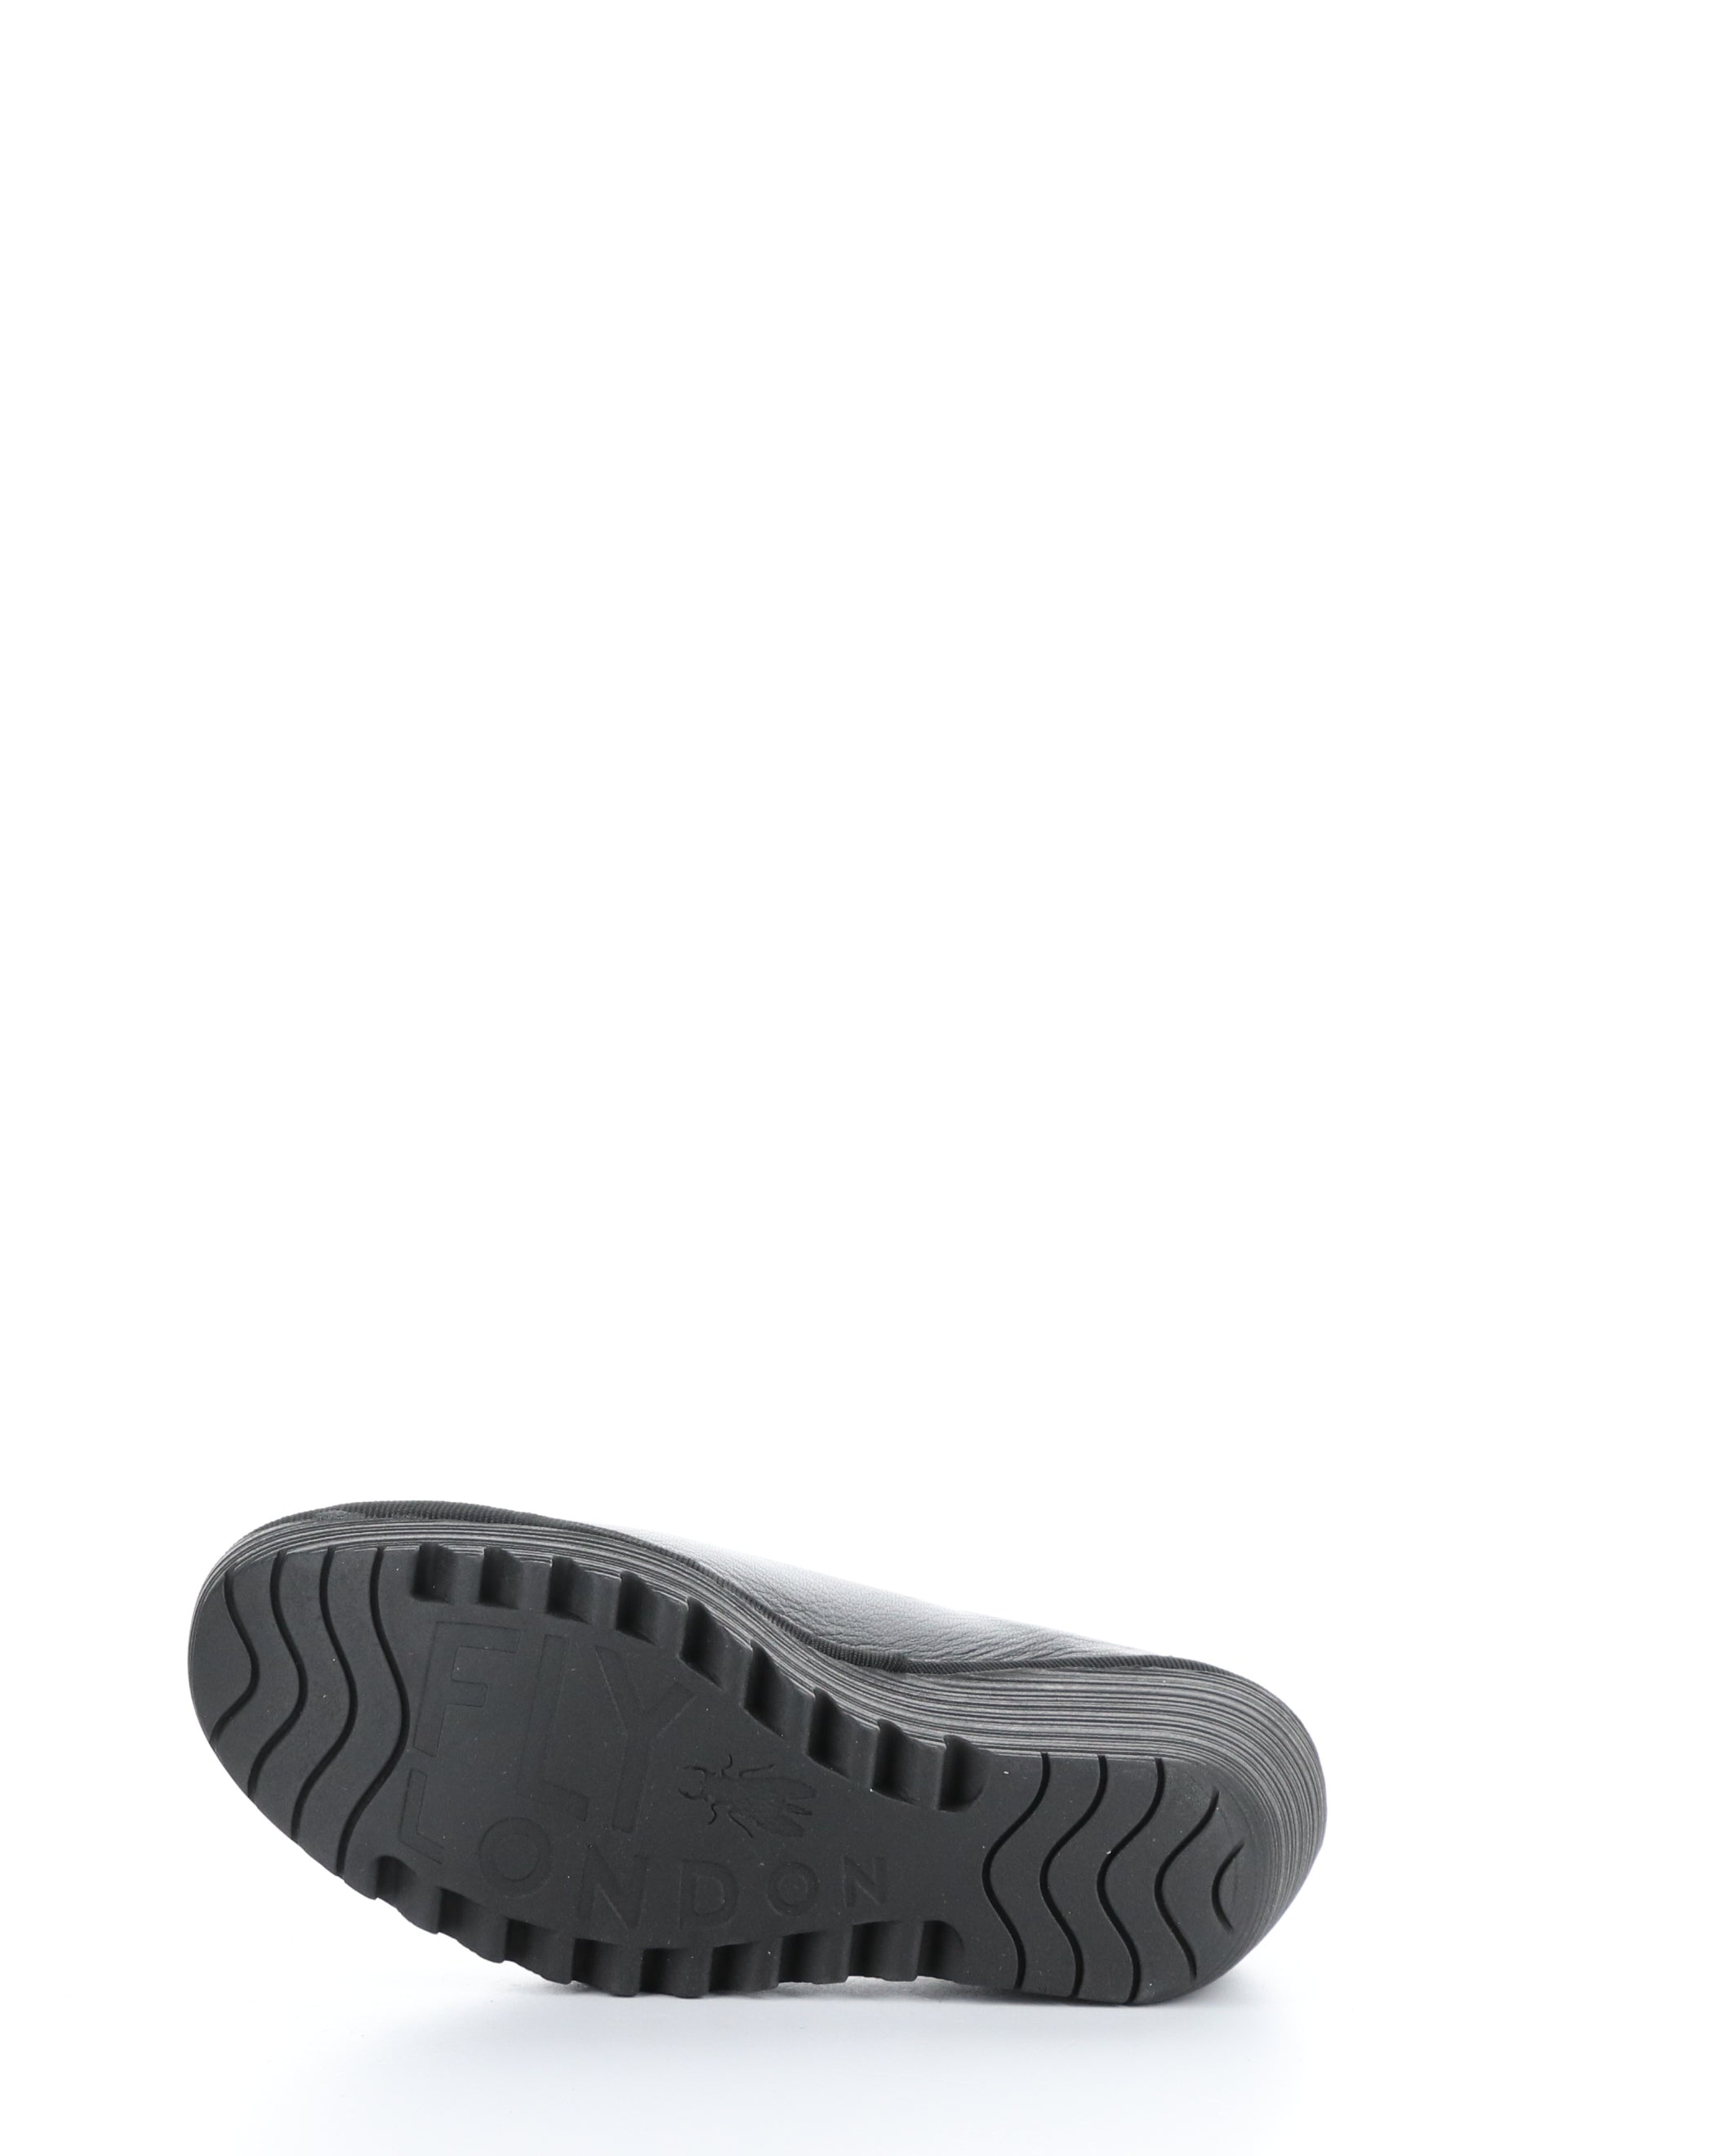 Fly London Yoza Black Leather Wedge Shoe P501438 006